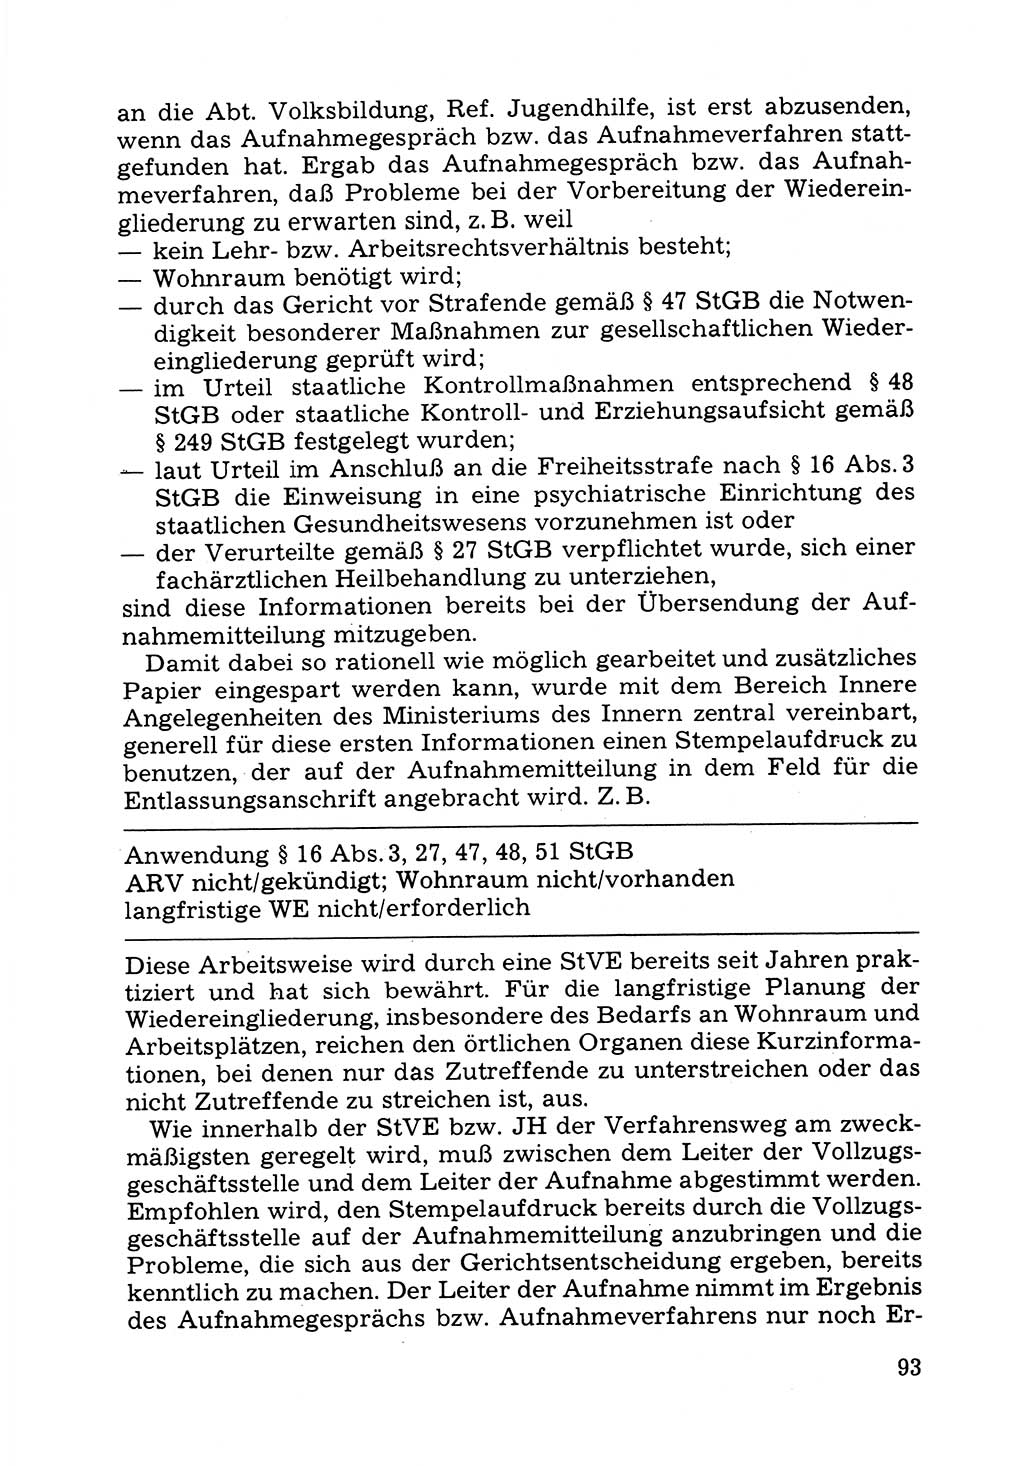 Verwaltungsmäßige Aufgaben beim Vollzug der Untersuchungshaft (U-Haft) sowie der Strafen mit Freiheitsentzug (SV) [Deutsche Demokratische Republik (DDR)] 1980, Seite 93 (Aufg. Vollz. U-Haft SV DDR 1980, S. 93)